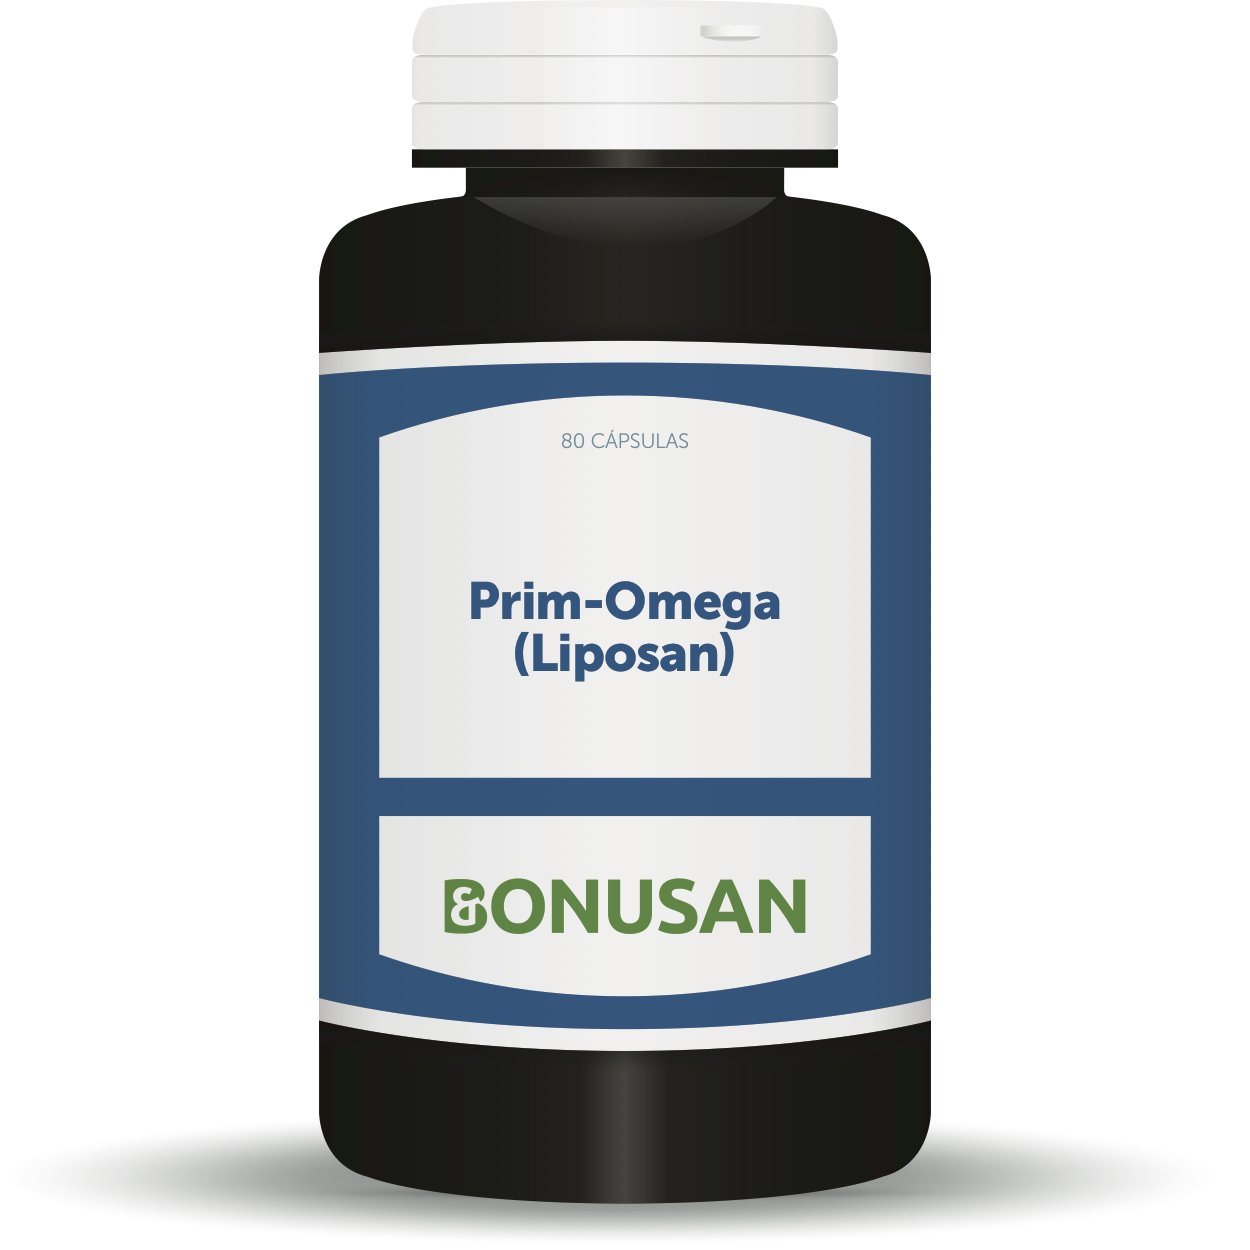 Prim Omega 60 Capsulas | Bonusan - Dietetica Ferrer